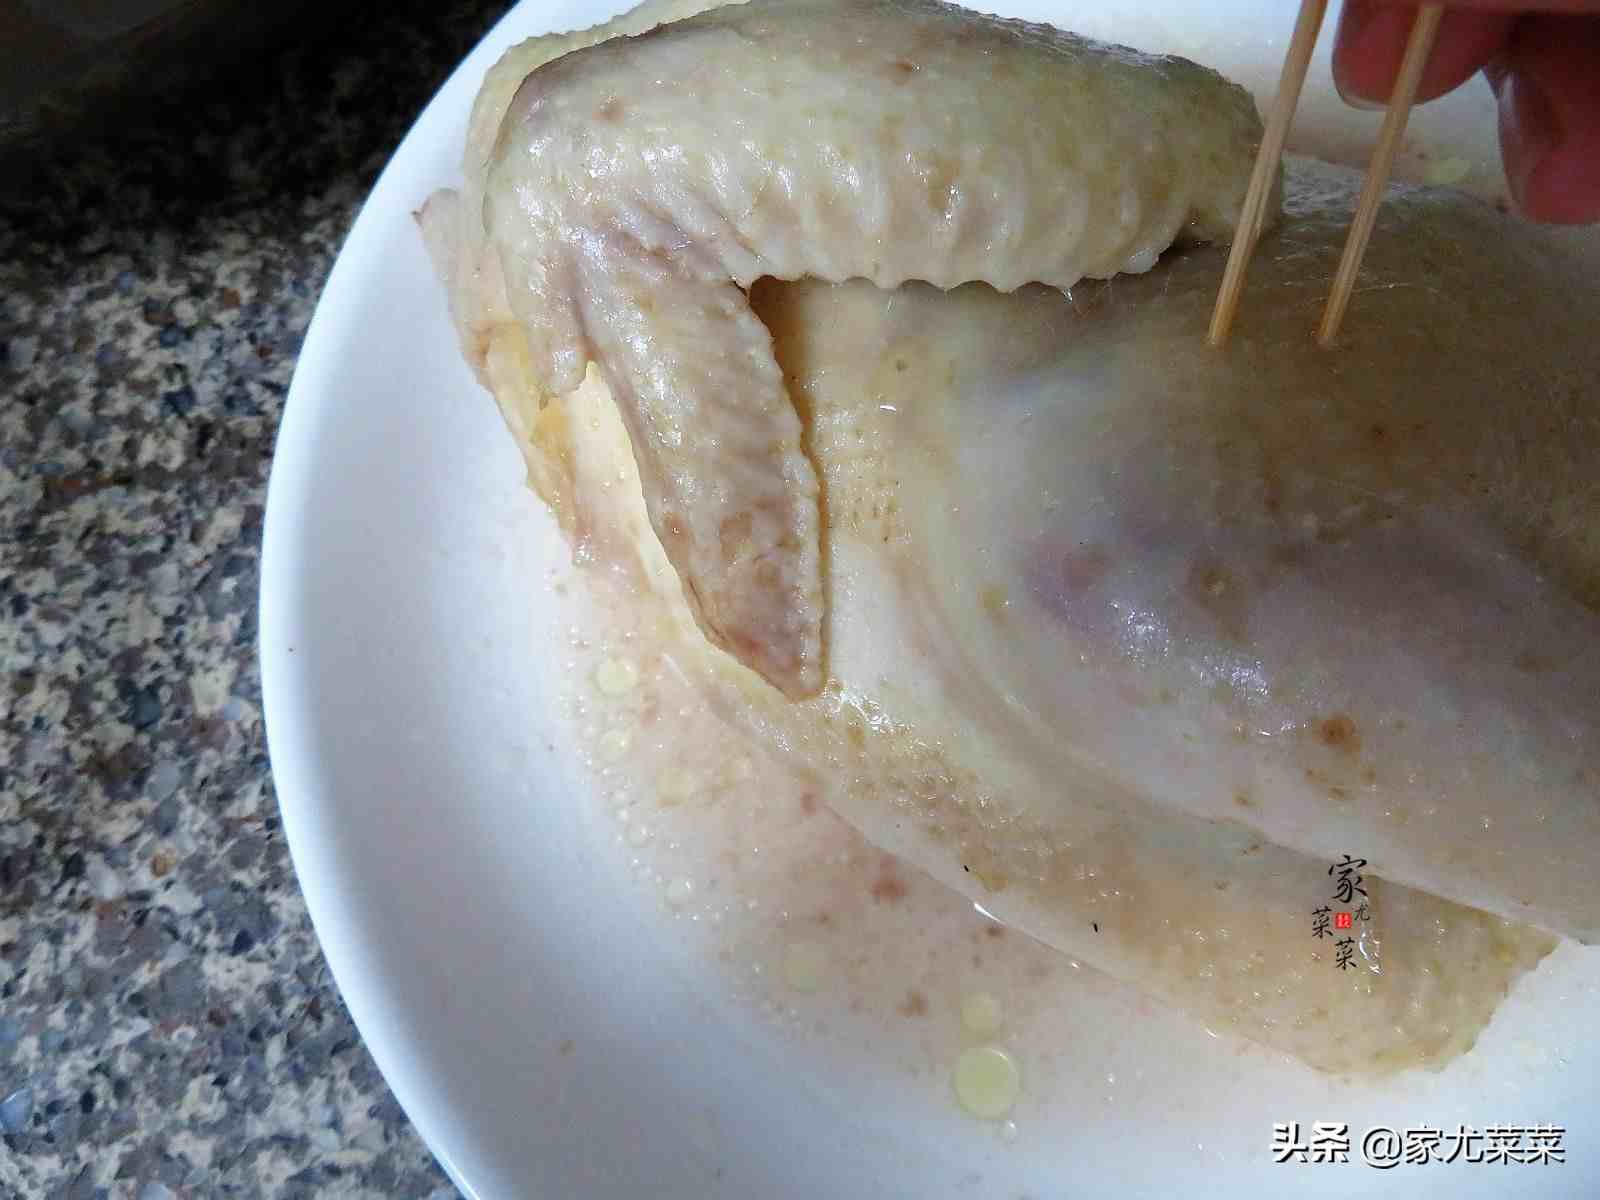 沙姜鸡的做法|广东沙姜鸡的正宗家常制作方法